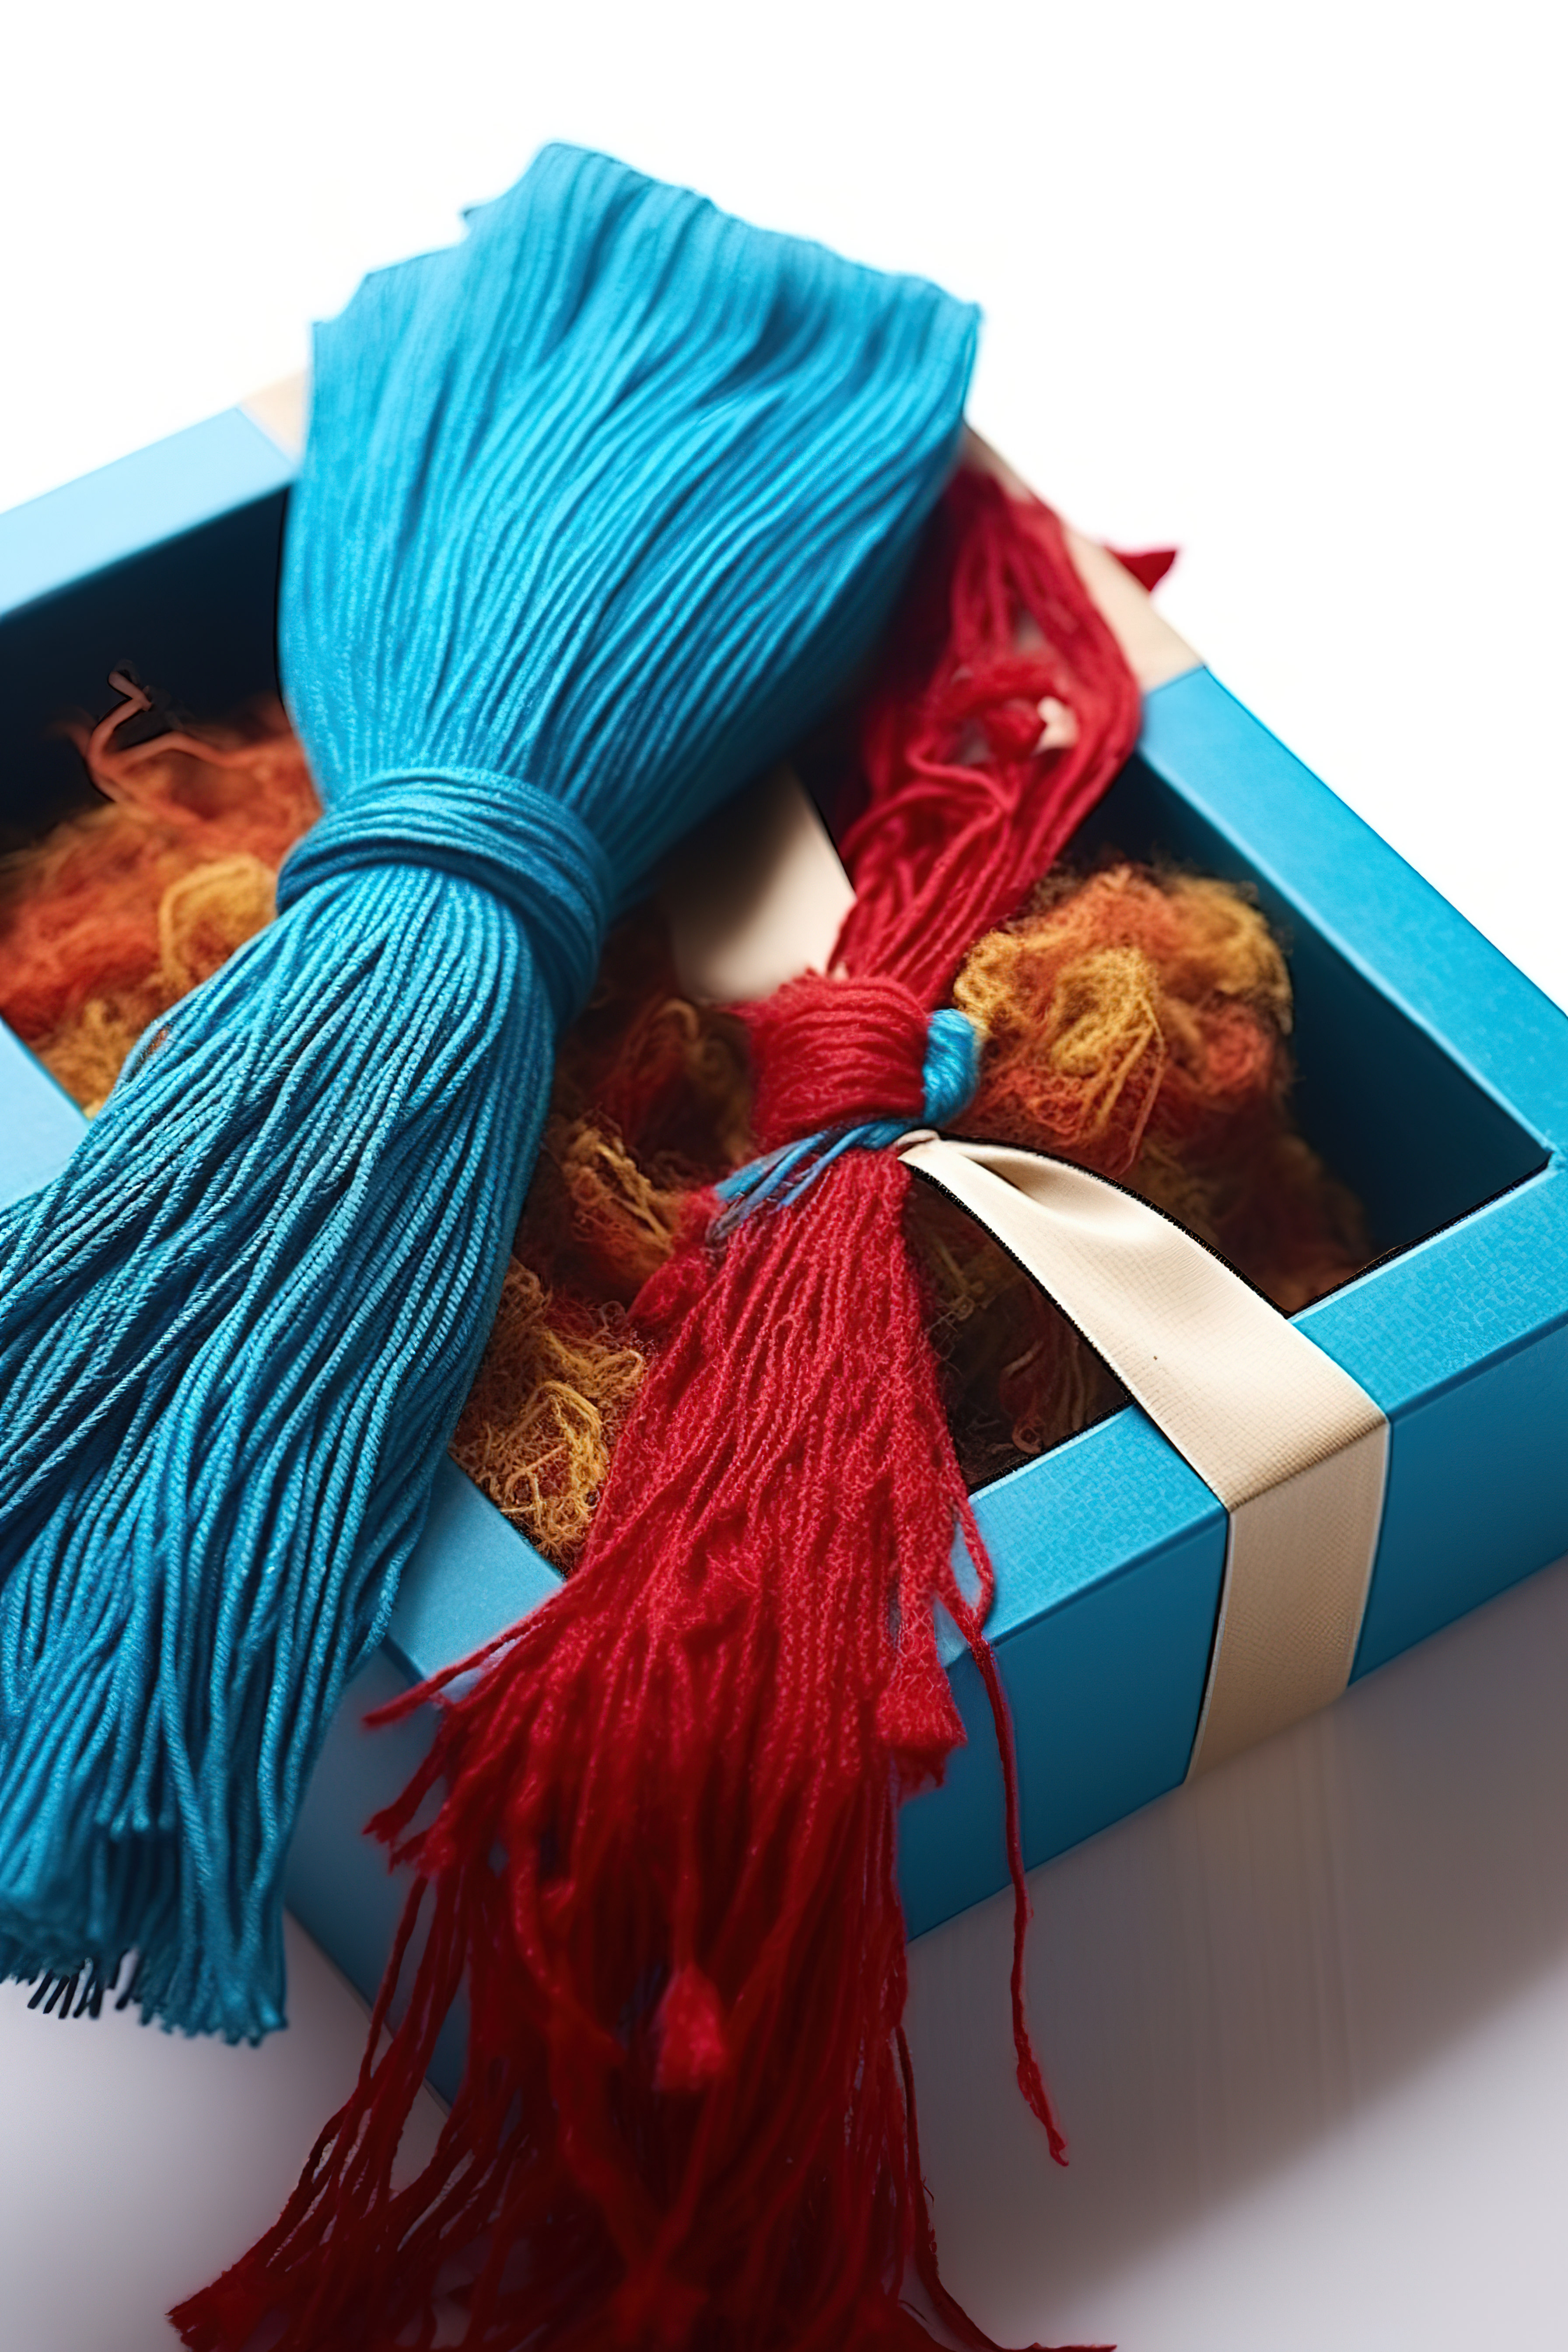 礼品盒里有一条带流苏的蓝色围巾图片